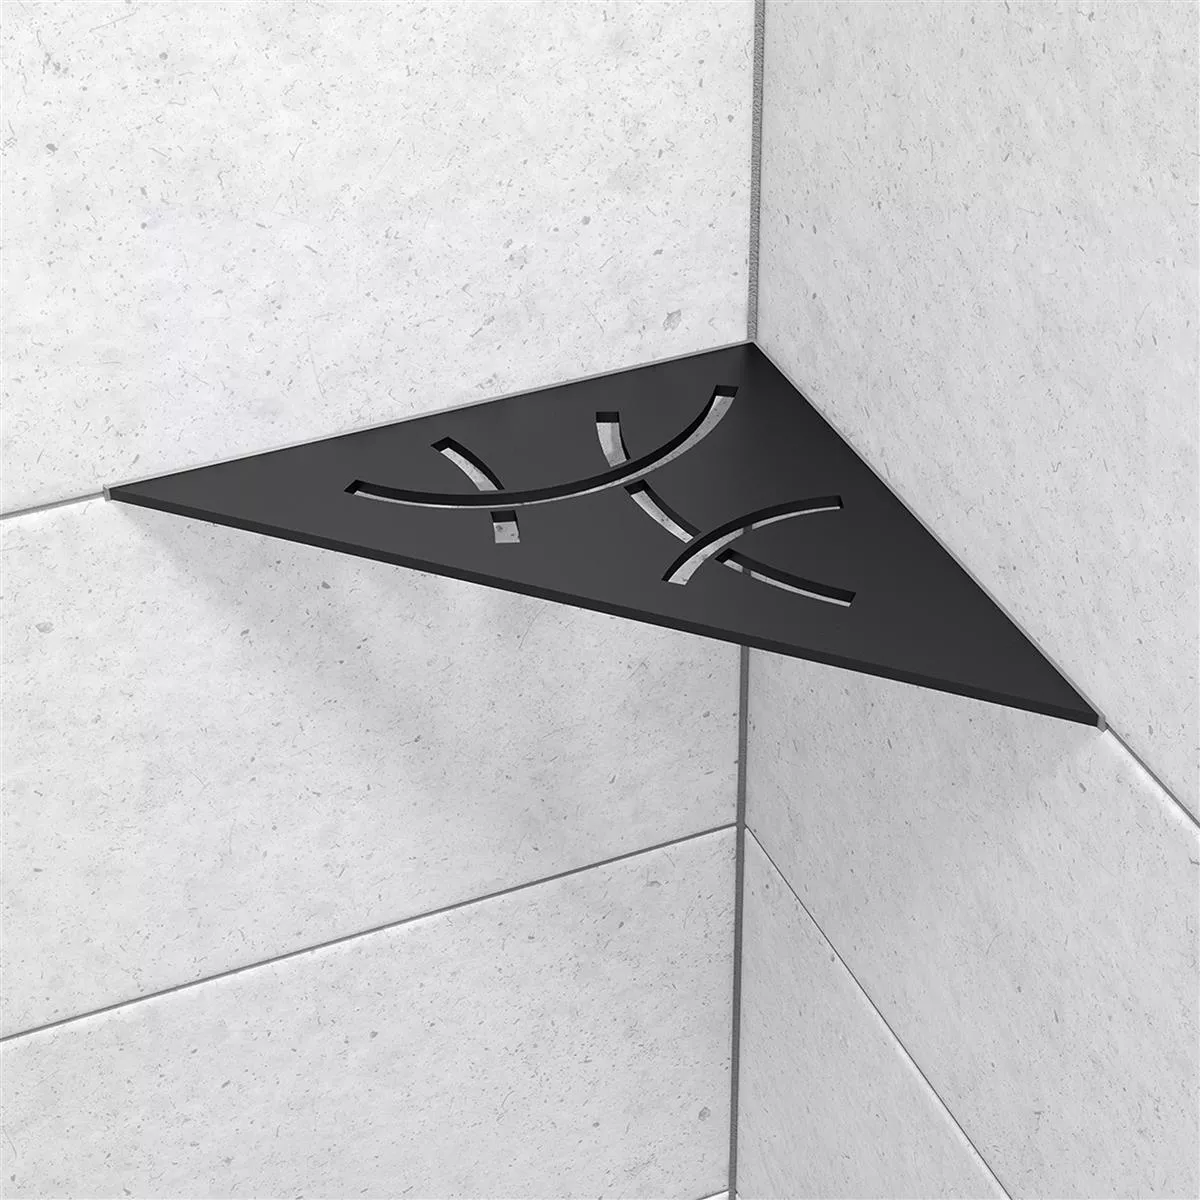 Schlüter étagère murale triangle 21x21cm Curve graphite noir mat